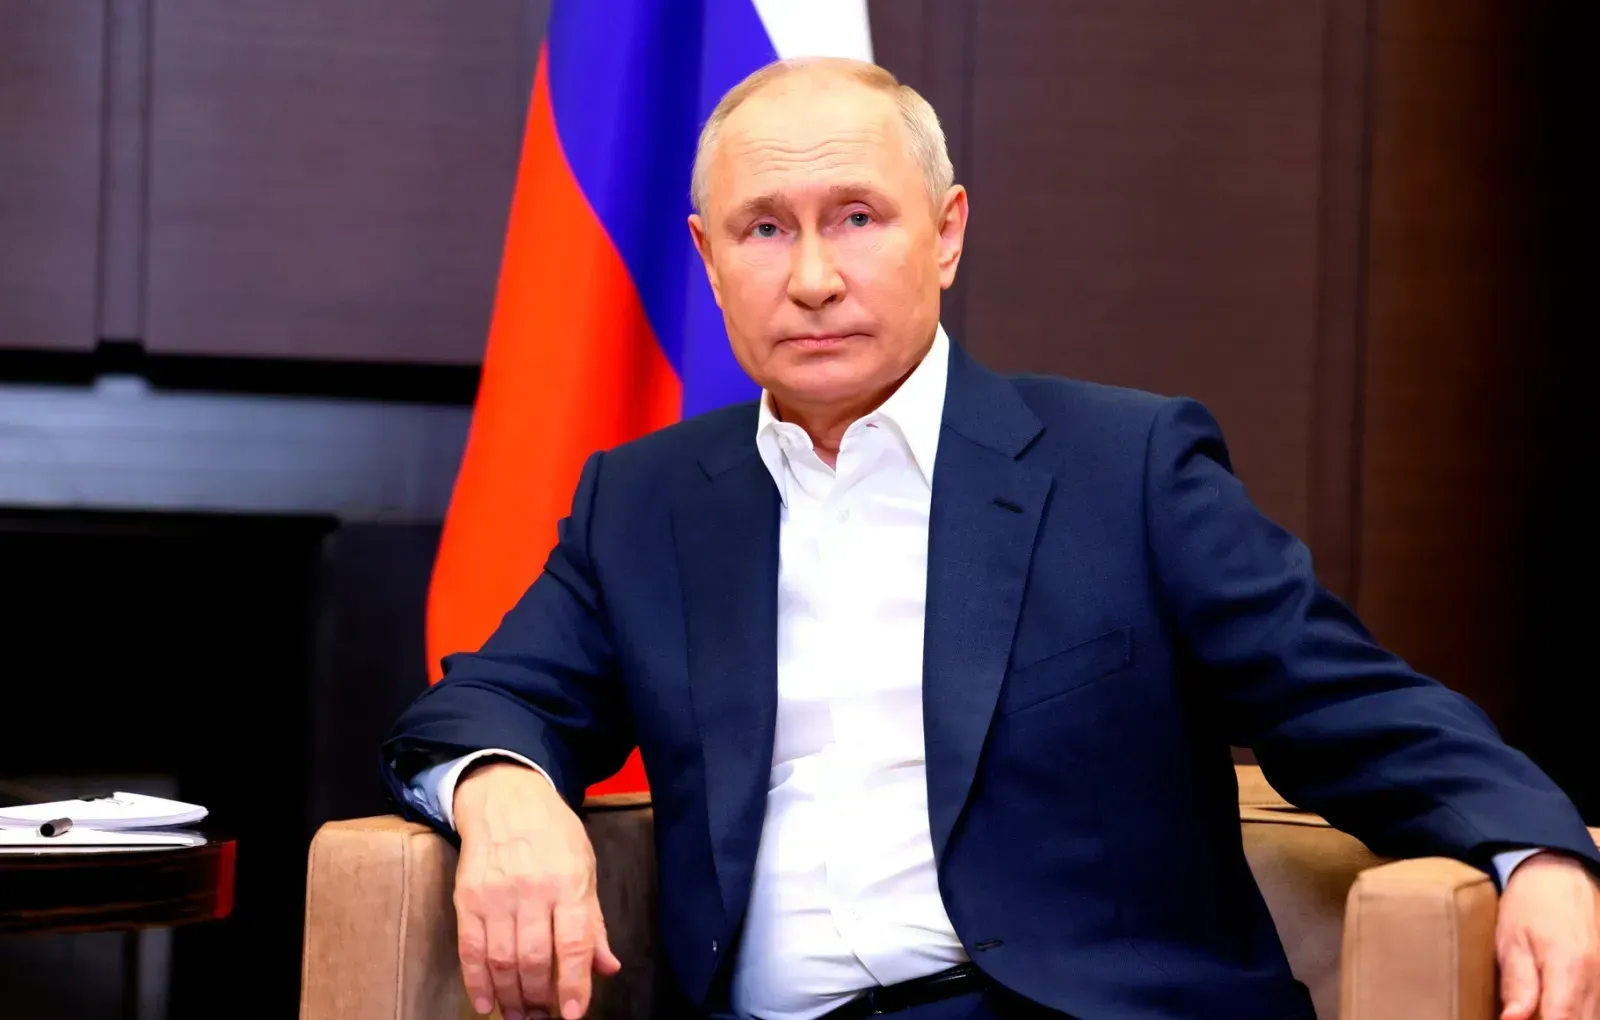 Путин провел переговоры с Пашиняном